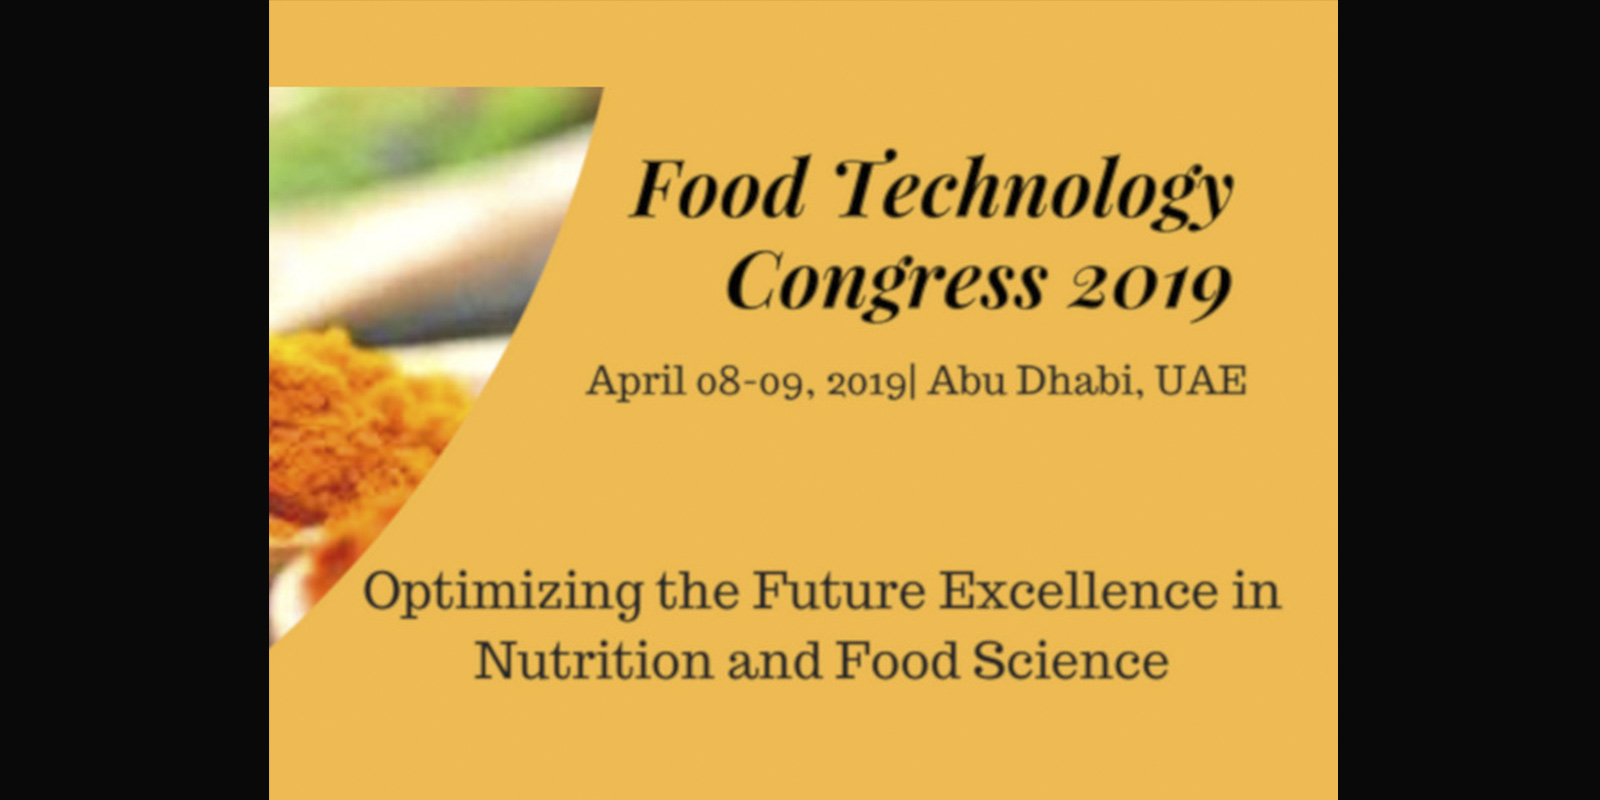 Food Technology Congress 2019